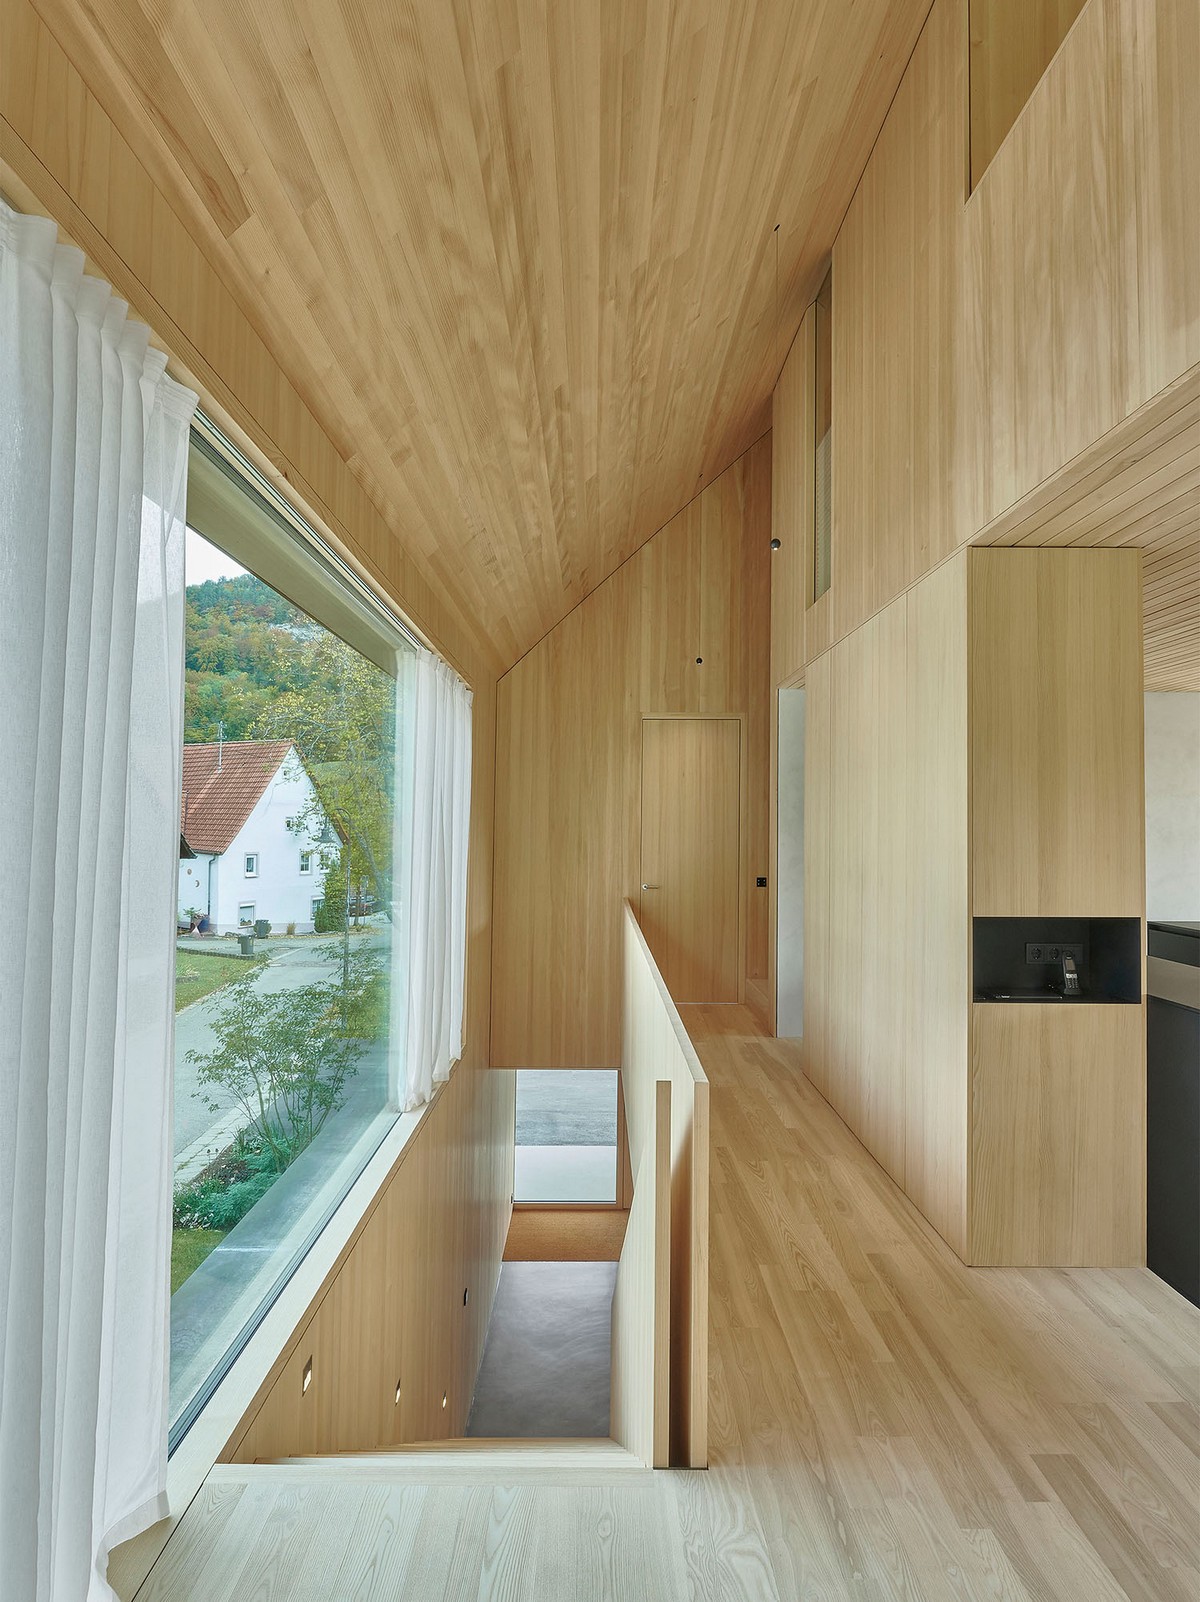 Открытый деревянный дом в Германии пространство, Открытый, комнаты, визуально, Dietrich, сторону, комнату, Маргретхаузен, отделить, ненужными, таким, образом, максимально, увеличило, жилое, Результатом, является, сделало, очень, индивидуальный